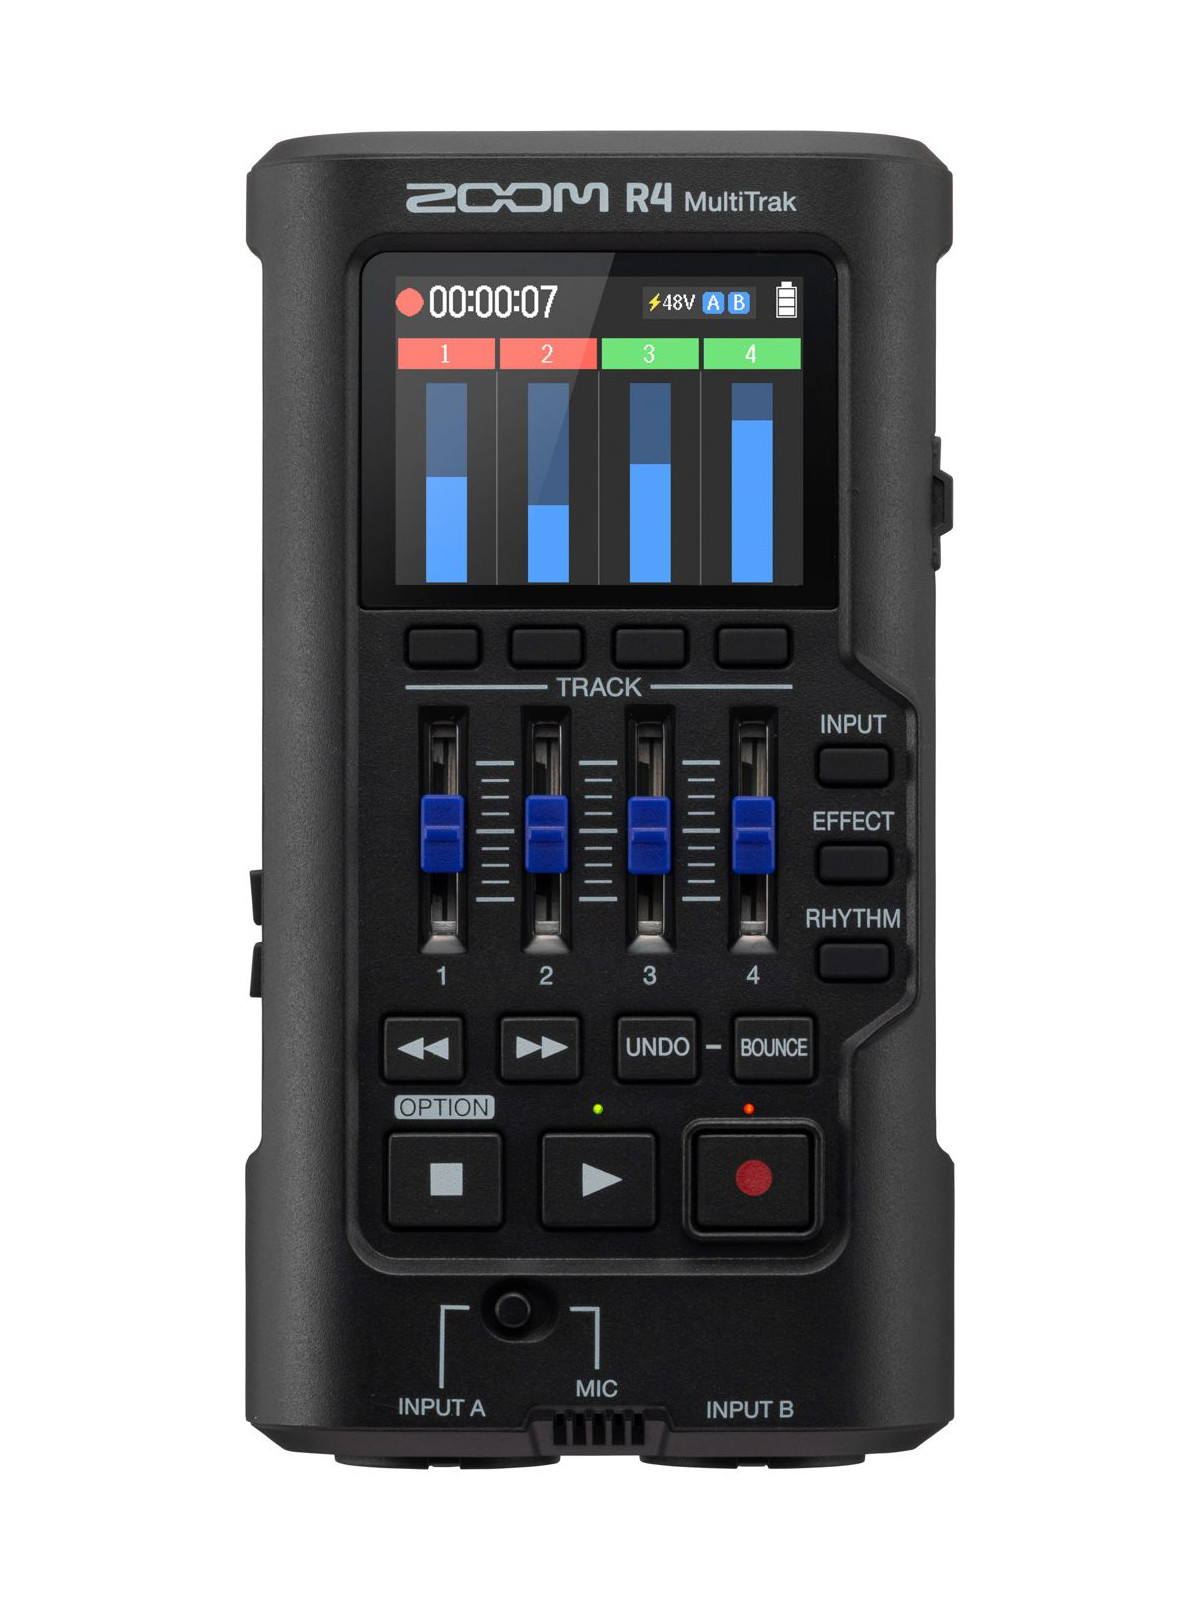 Console Enregistreur 4 pistes portable Zoom R4 MultiTrak